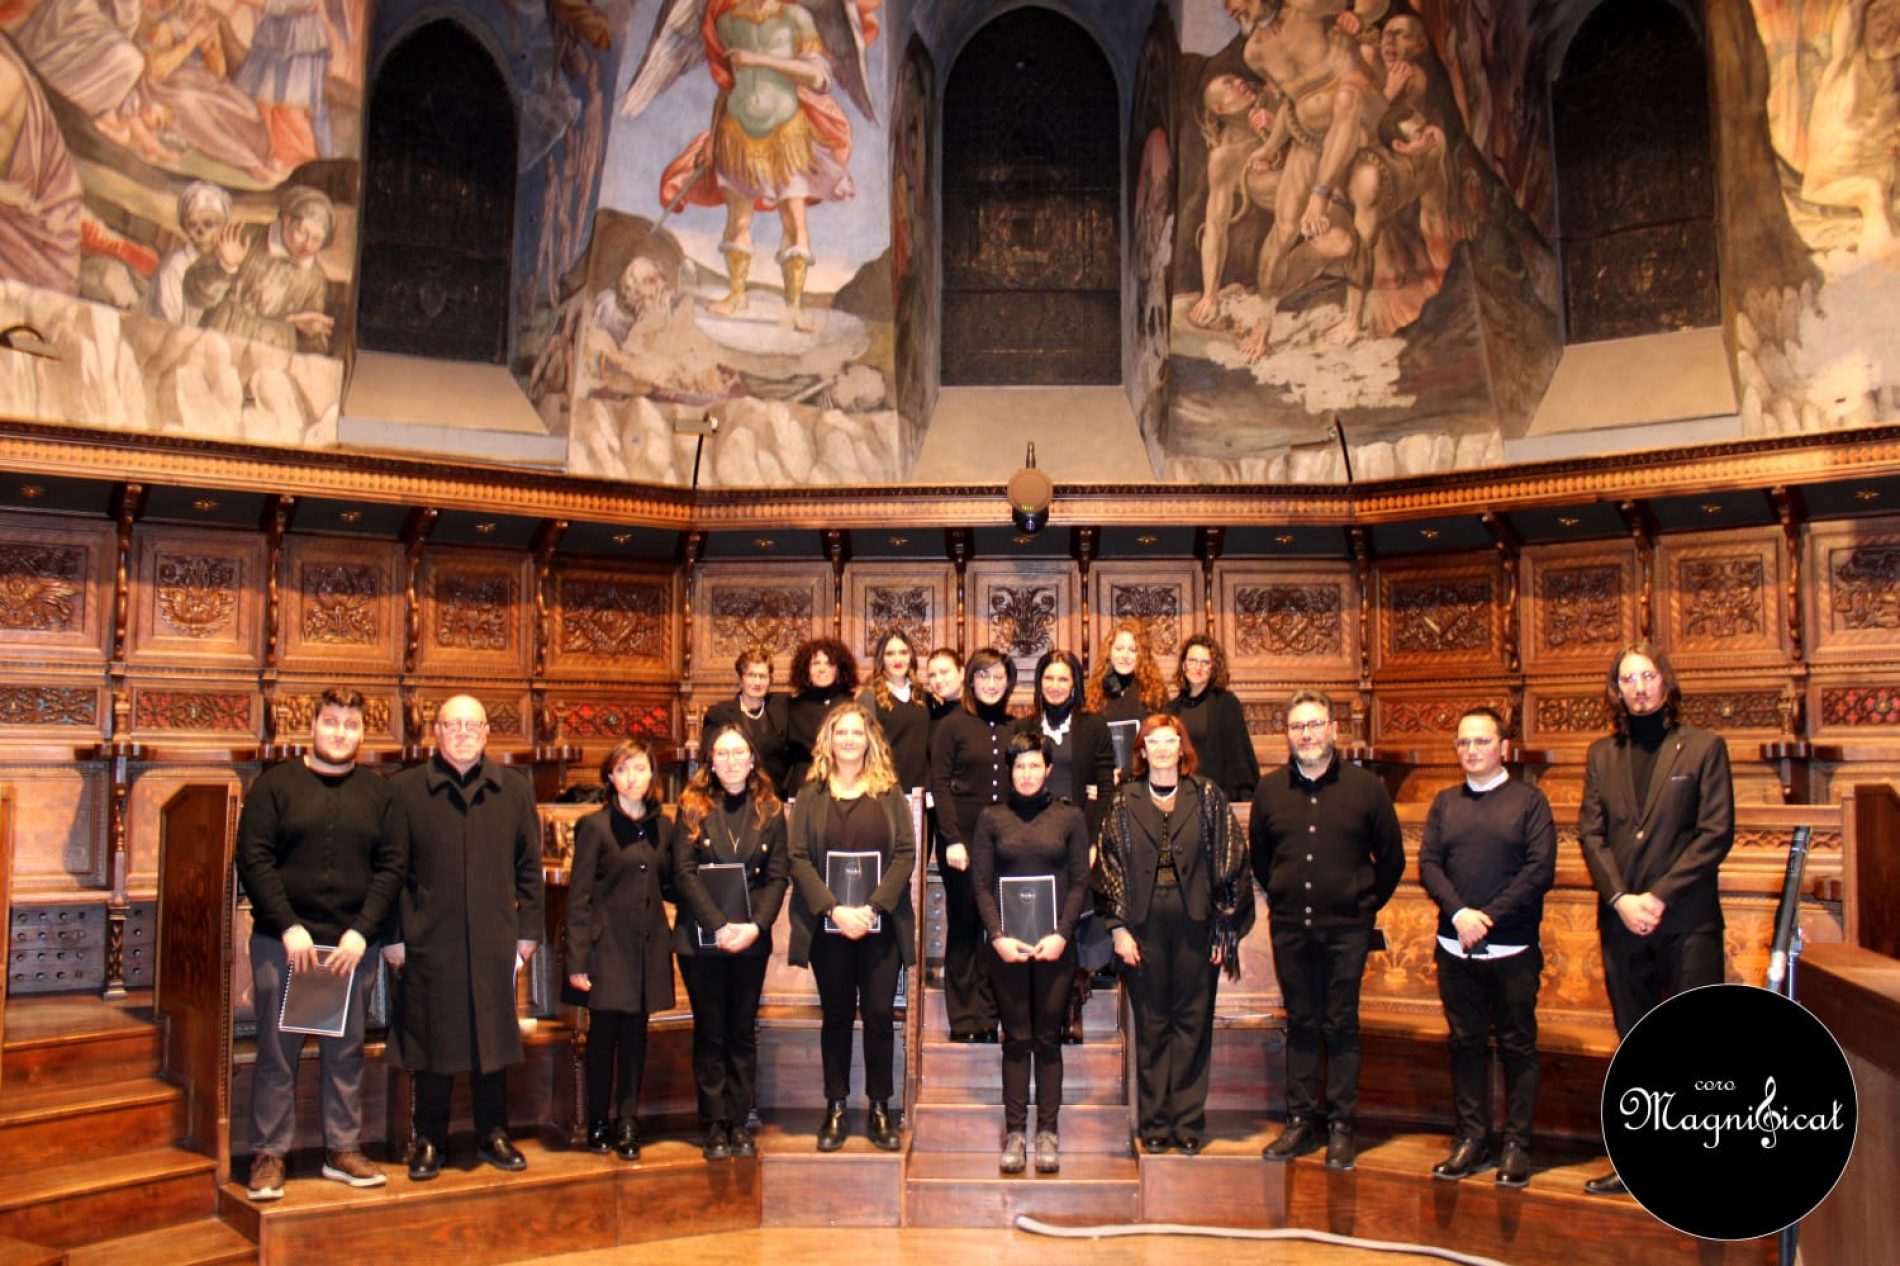 Barrafranca. Il coro Magnificat, “Il canto diventa preghiera profonda”, l’esperienza ad Assisi.